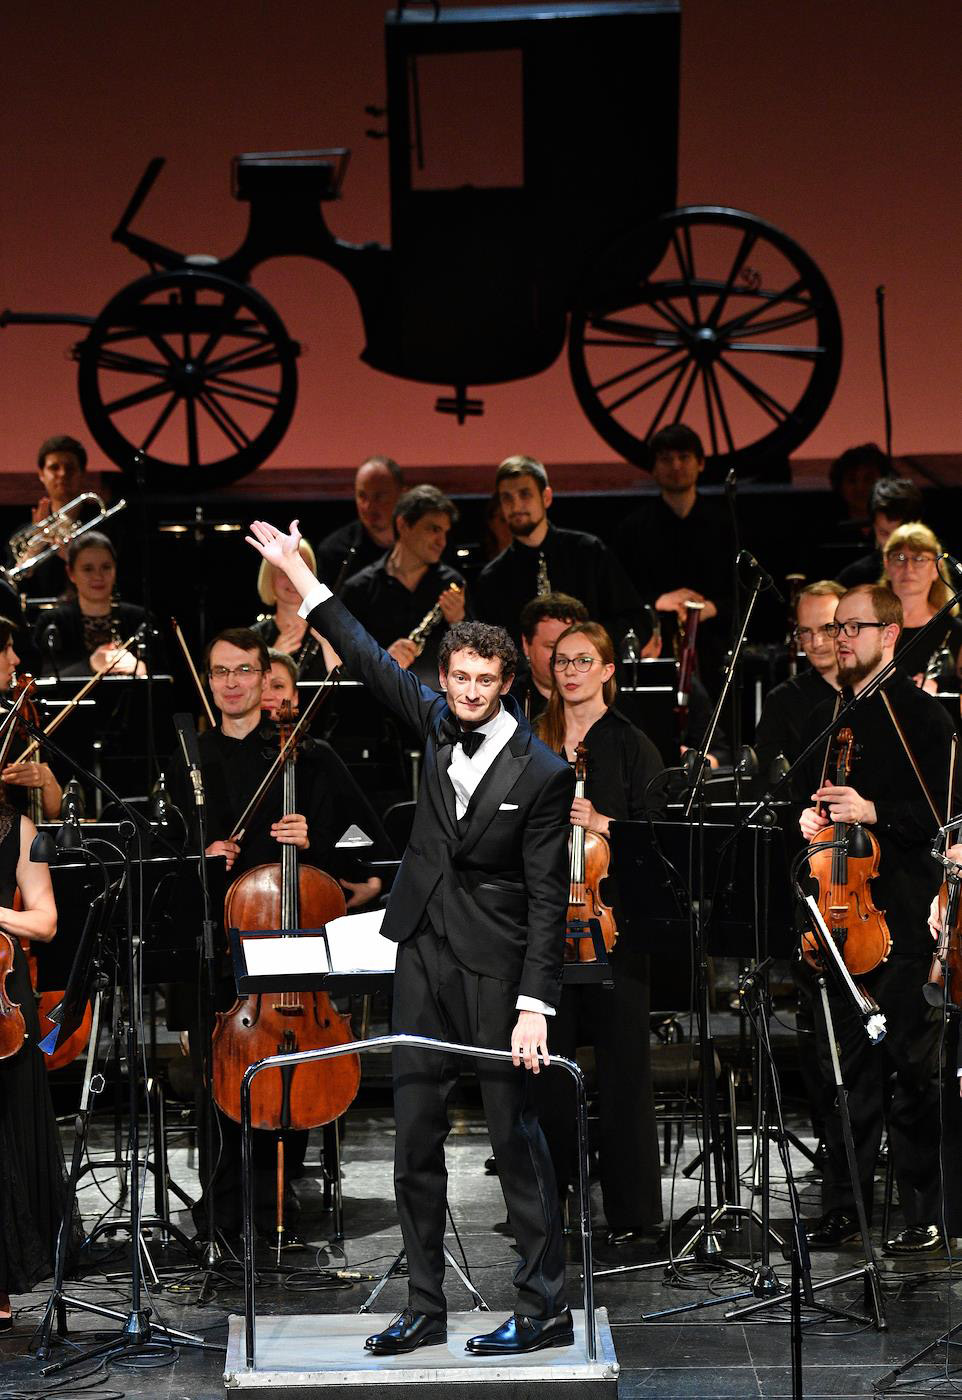 Клеман Нонсье во время оперного спектакля «Почтальон из Лонжюмо» на сцене театра «Новая Опера»